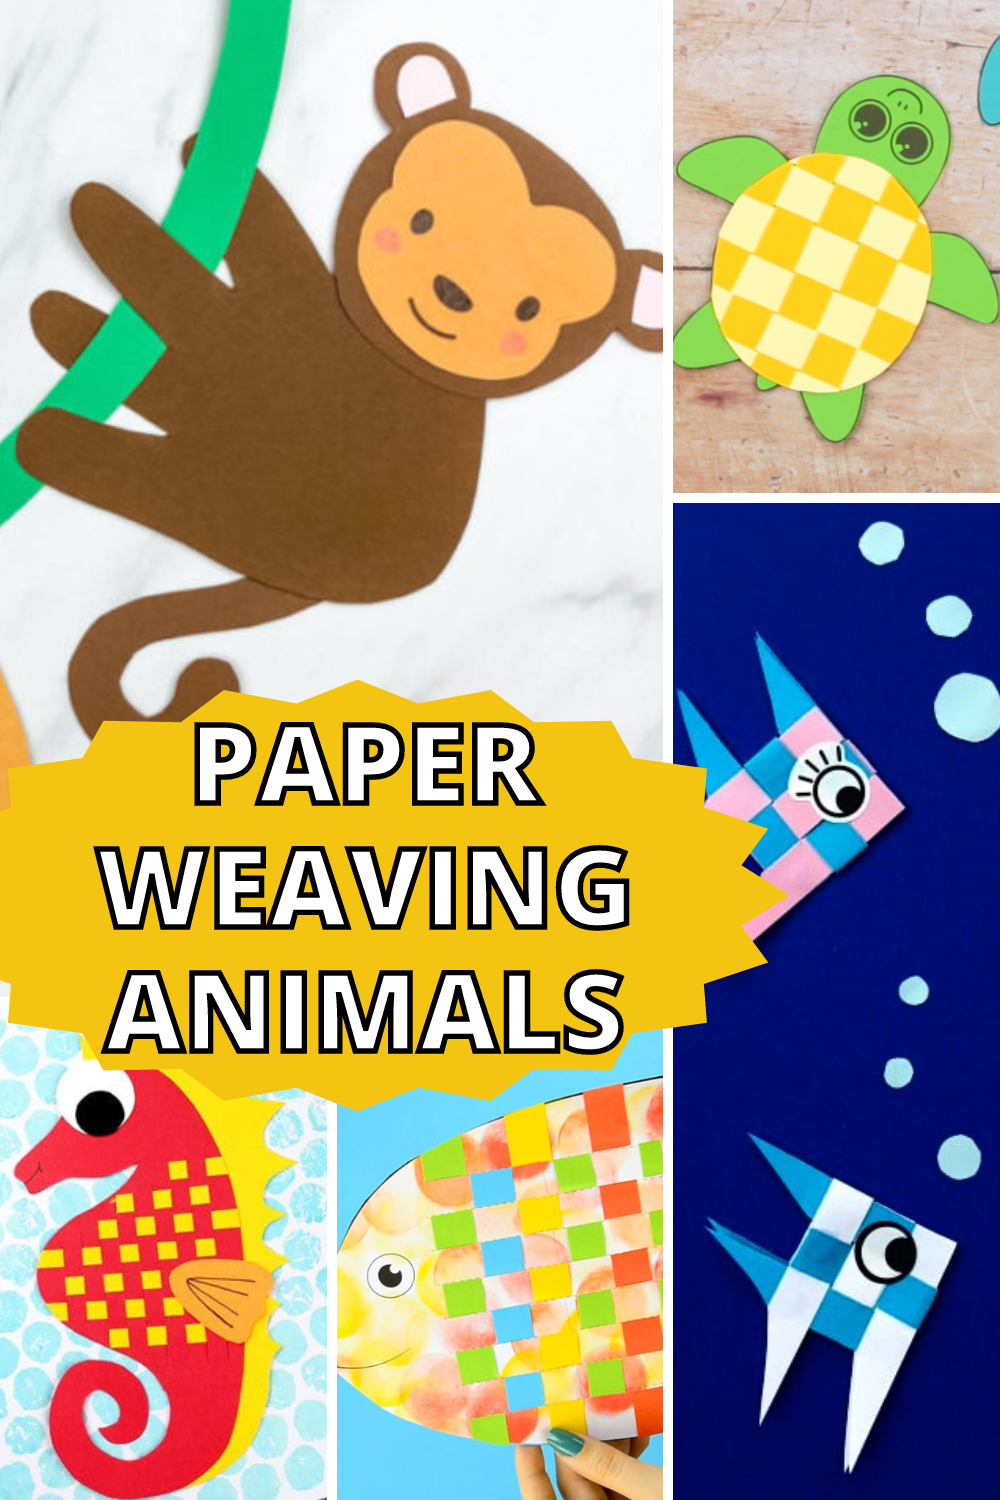 Paper-weaving-animals-for-preschoolers Paper Weaving Animals